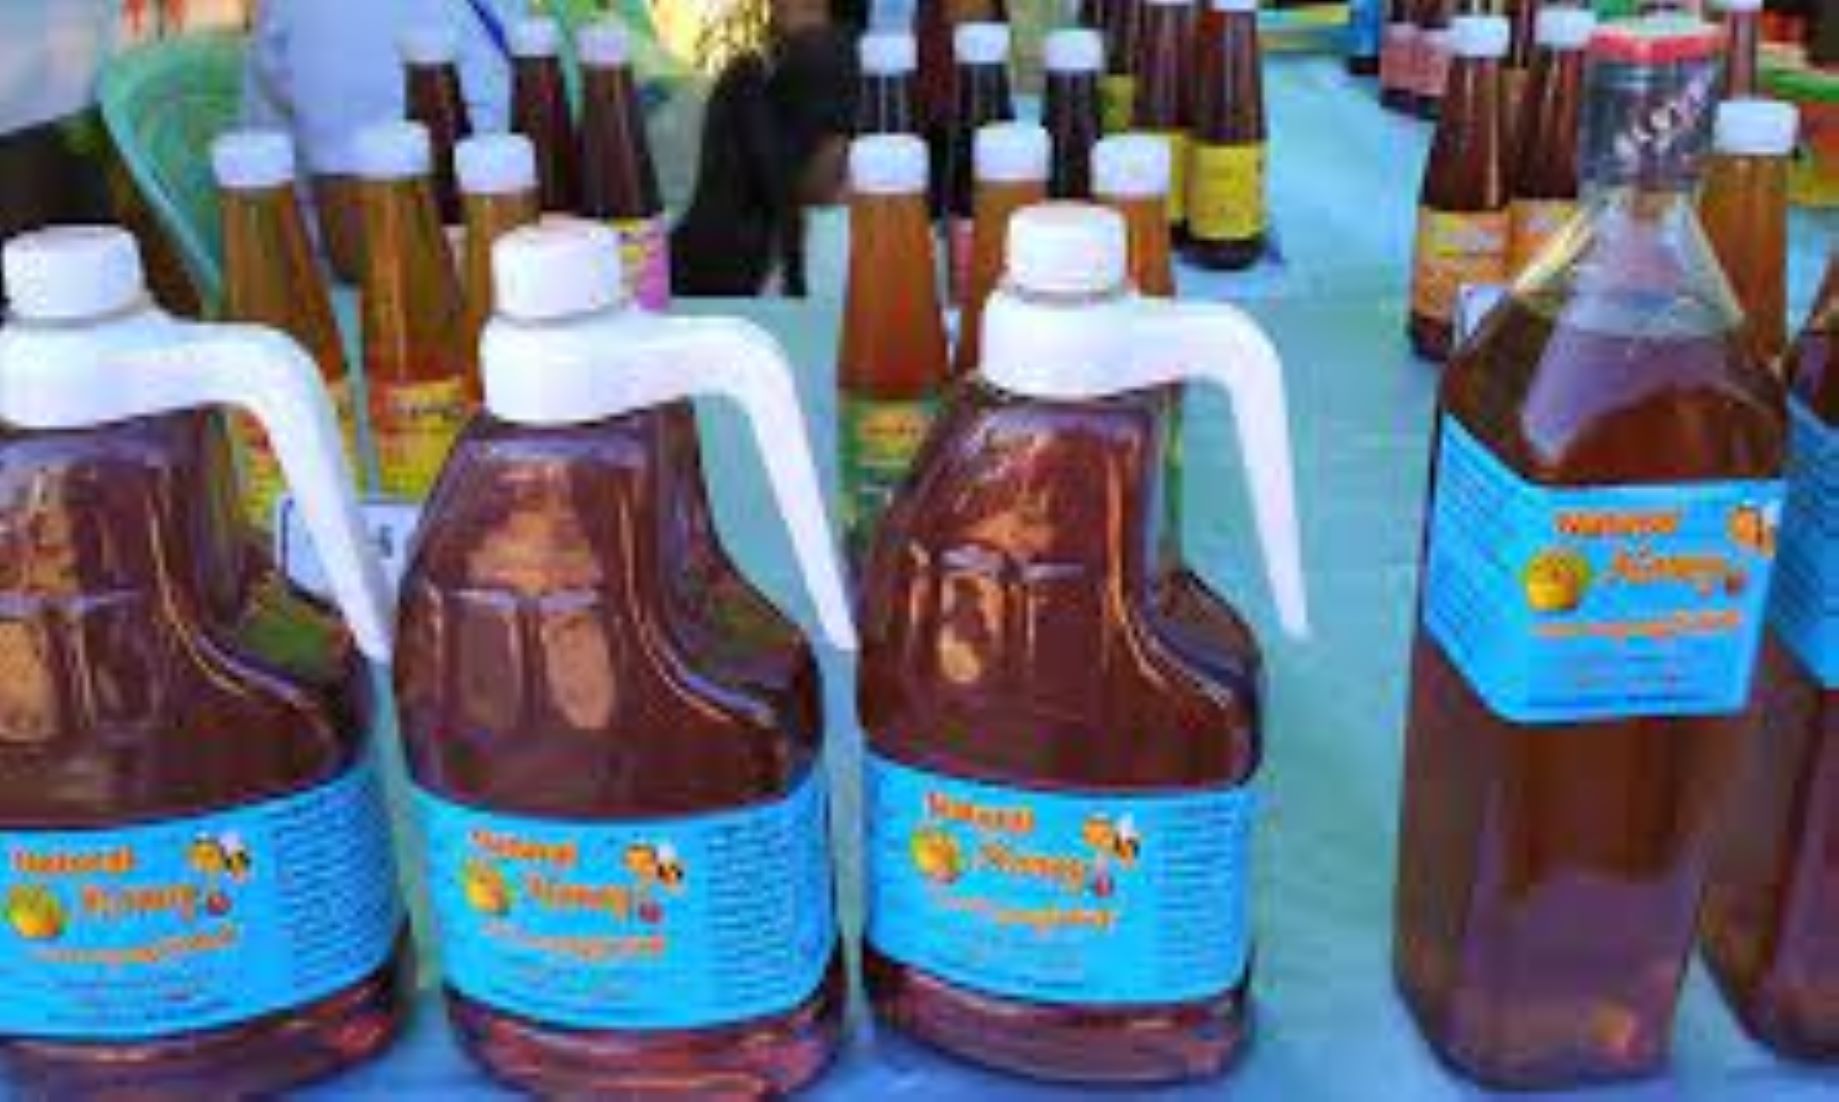 Myanmar Exported Over 1,500 Tonnes Of Honey In 11 Months